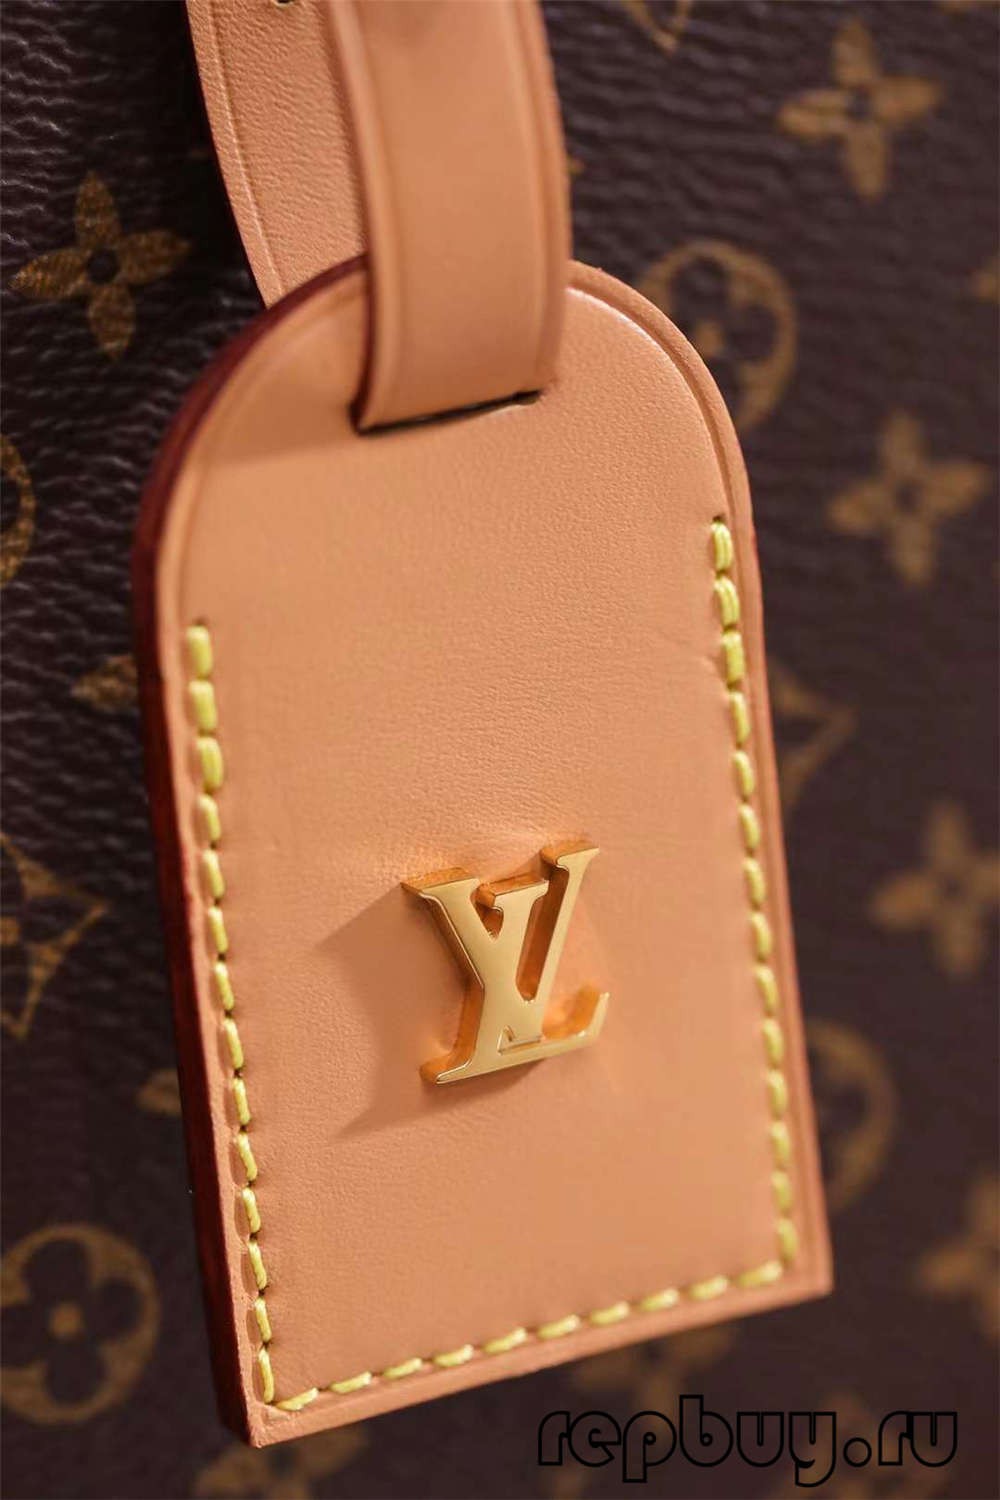 Louis Vuitton M43514 PETITE BOITE CHAPEAU 17.5 cm augšējās kopijas somas Aparatūras un amatniecības detaļas (2022. gada izdevums)-Labākās kvalitātes viltotās Louis Vuitton somas tiešsaistes veikals, dizaineru somas kopija ru